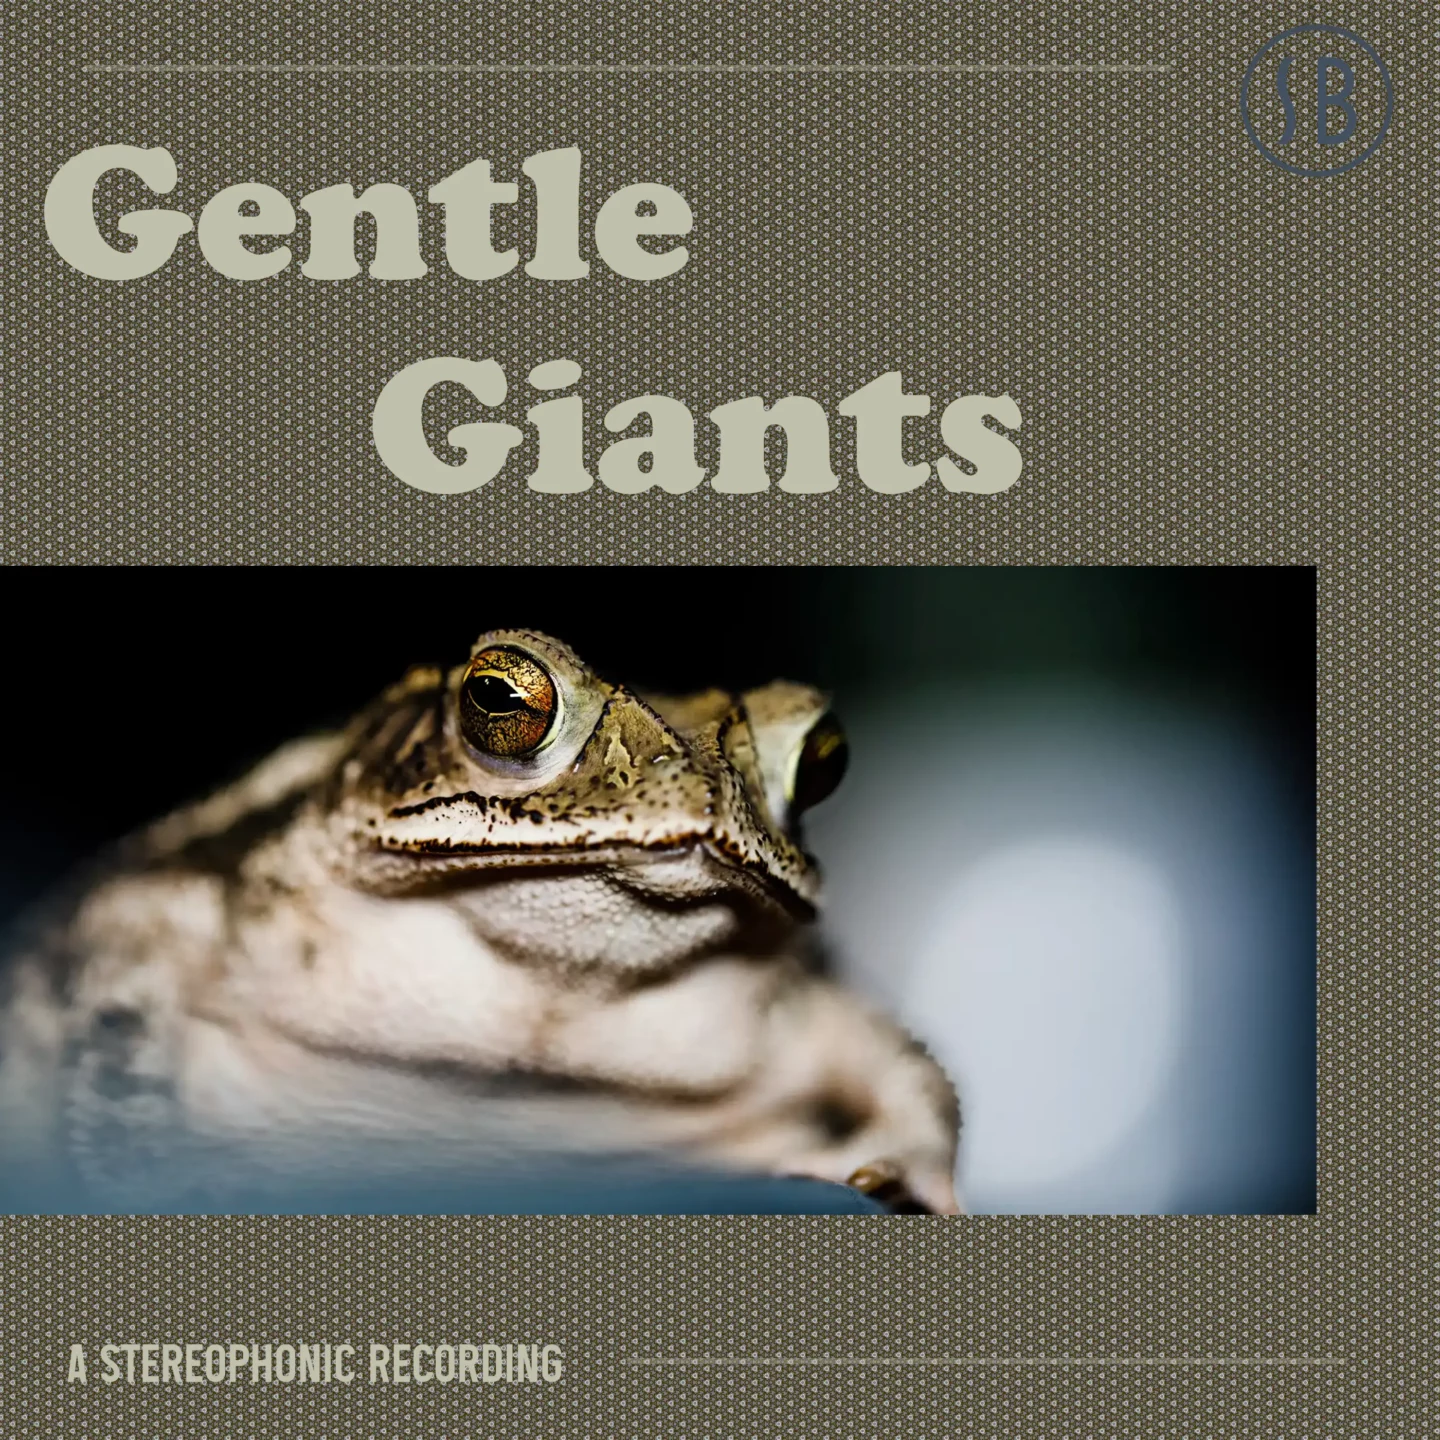 Album cover art for Gentle Giants